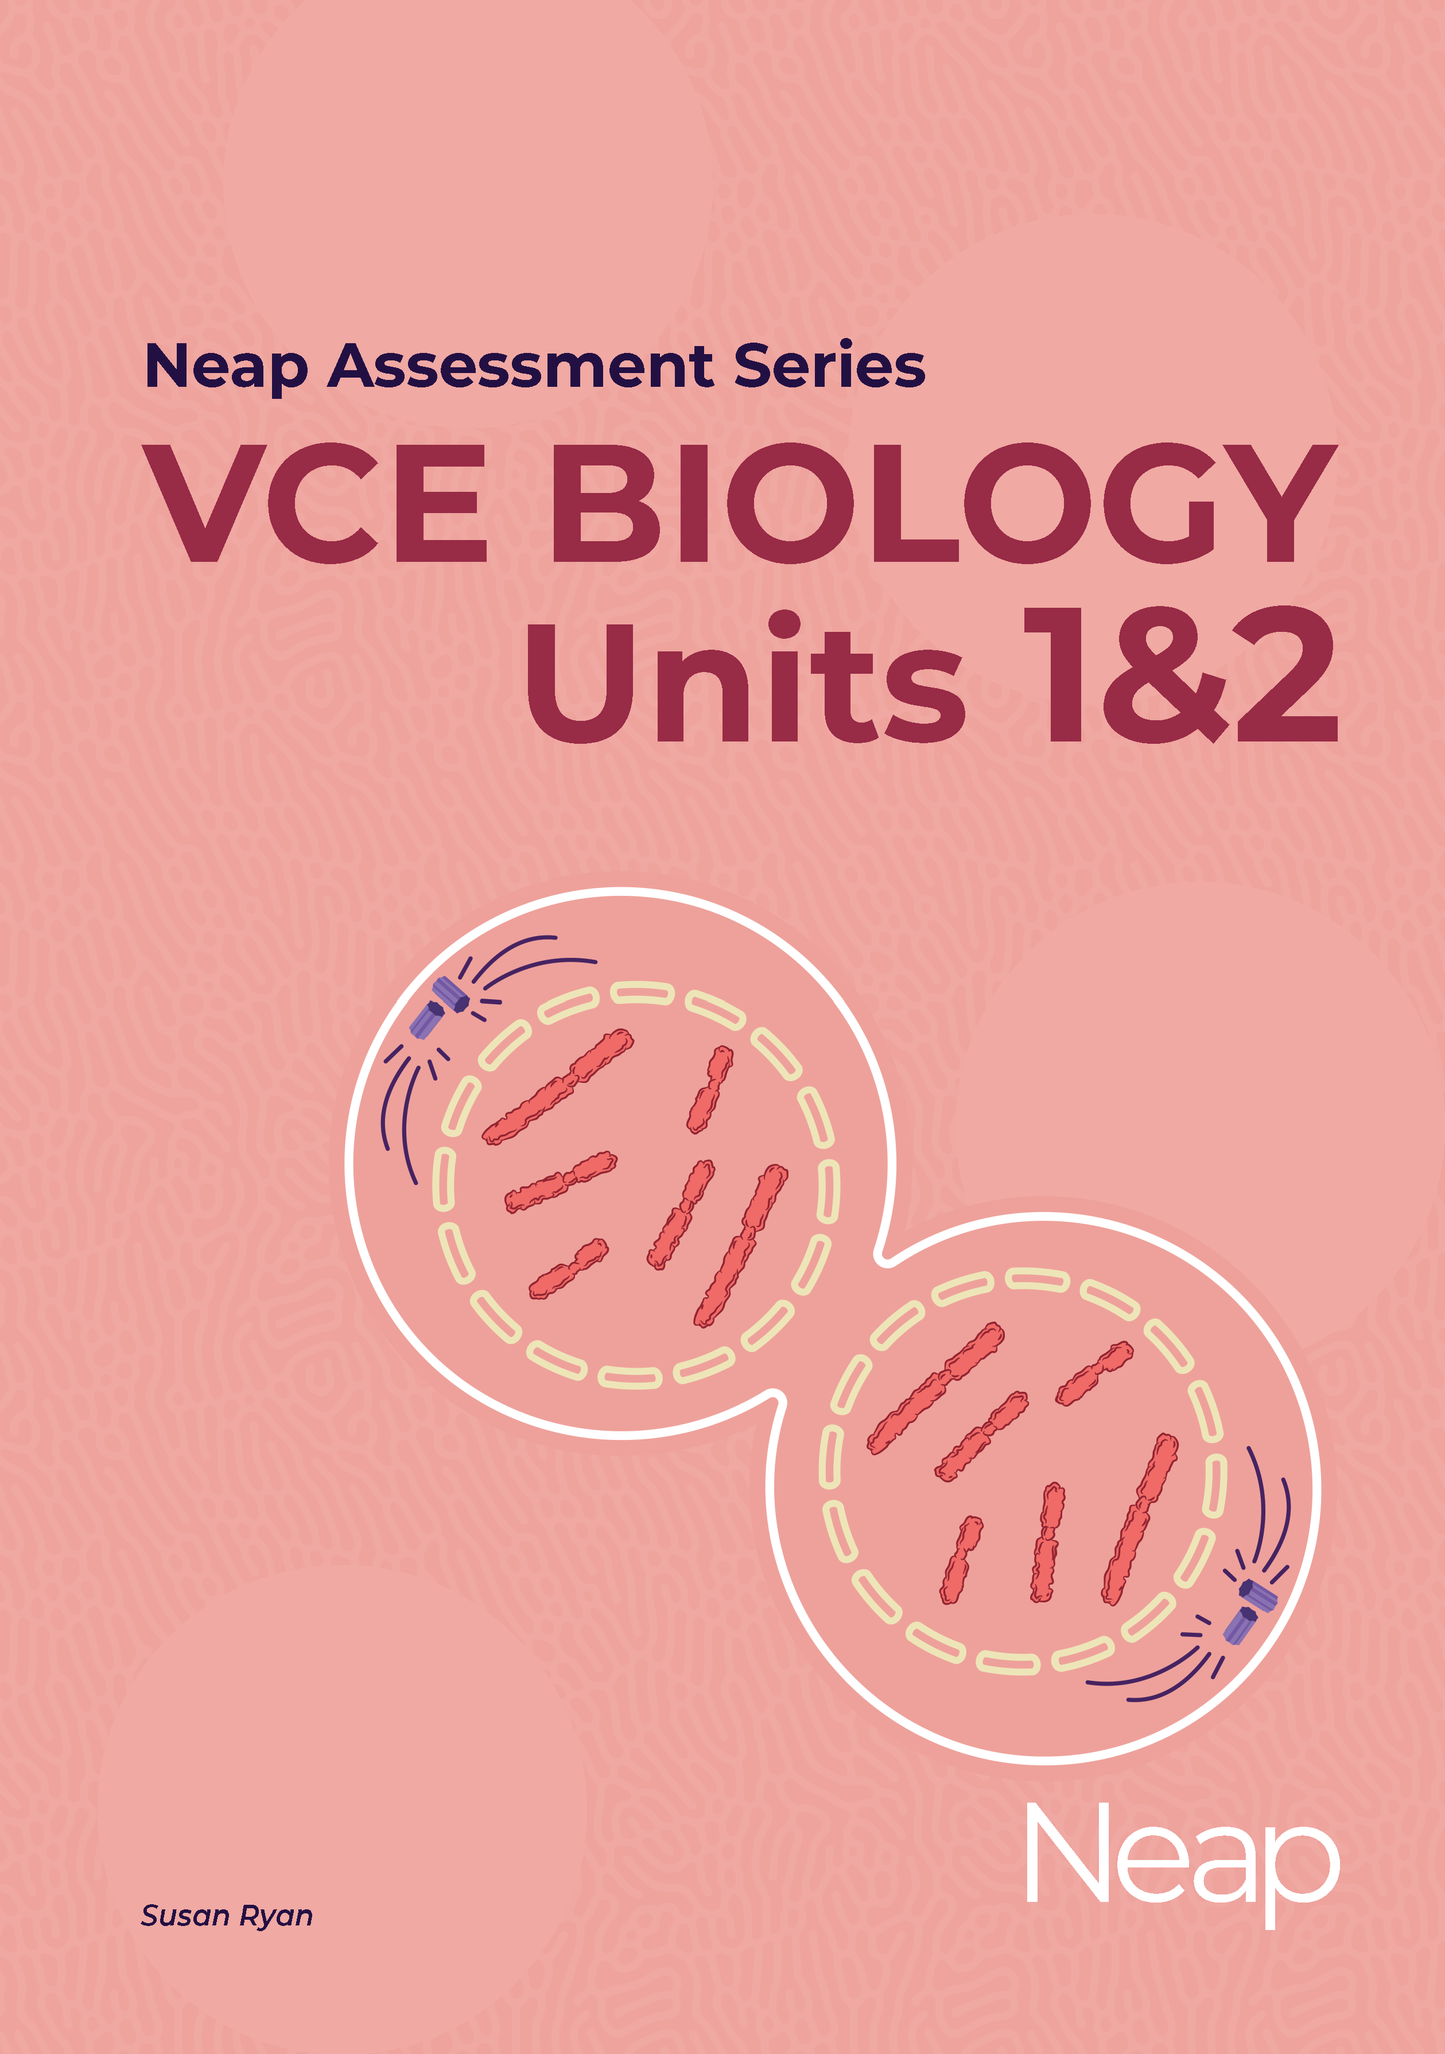 Neap Assessment Series: VCE Biology Units 1&2